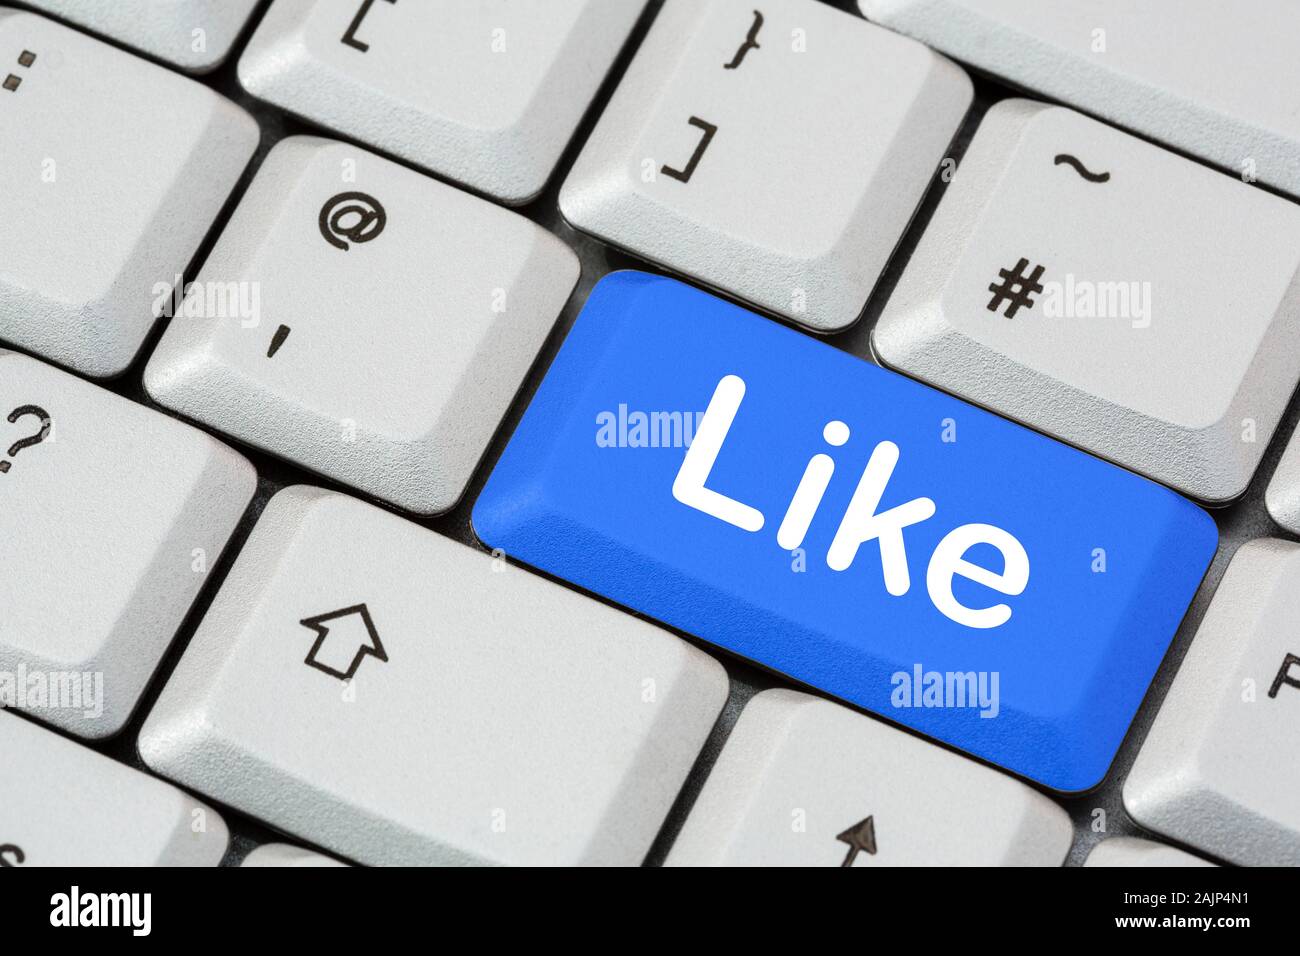 Una tastiera con la parola scritta in bianco su un tasto blu invio. Concetto di social media e networking di Facebook. Inghilterra, Regno Unito, Gran Bretagna Foto Stock